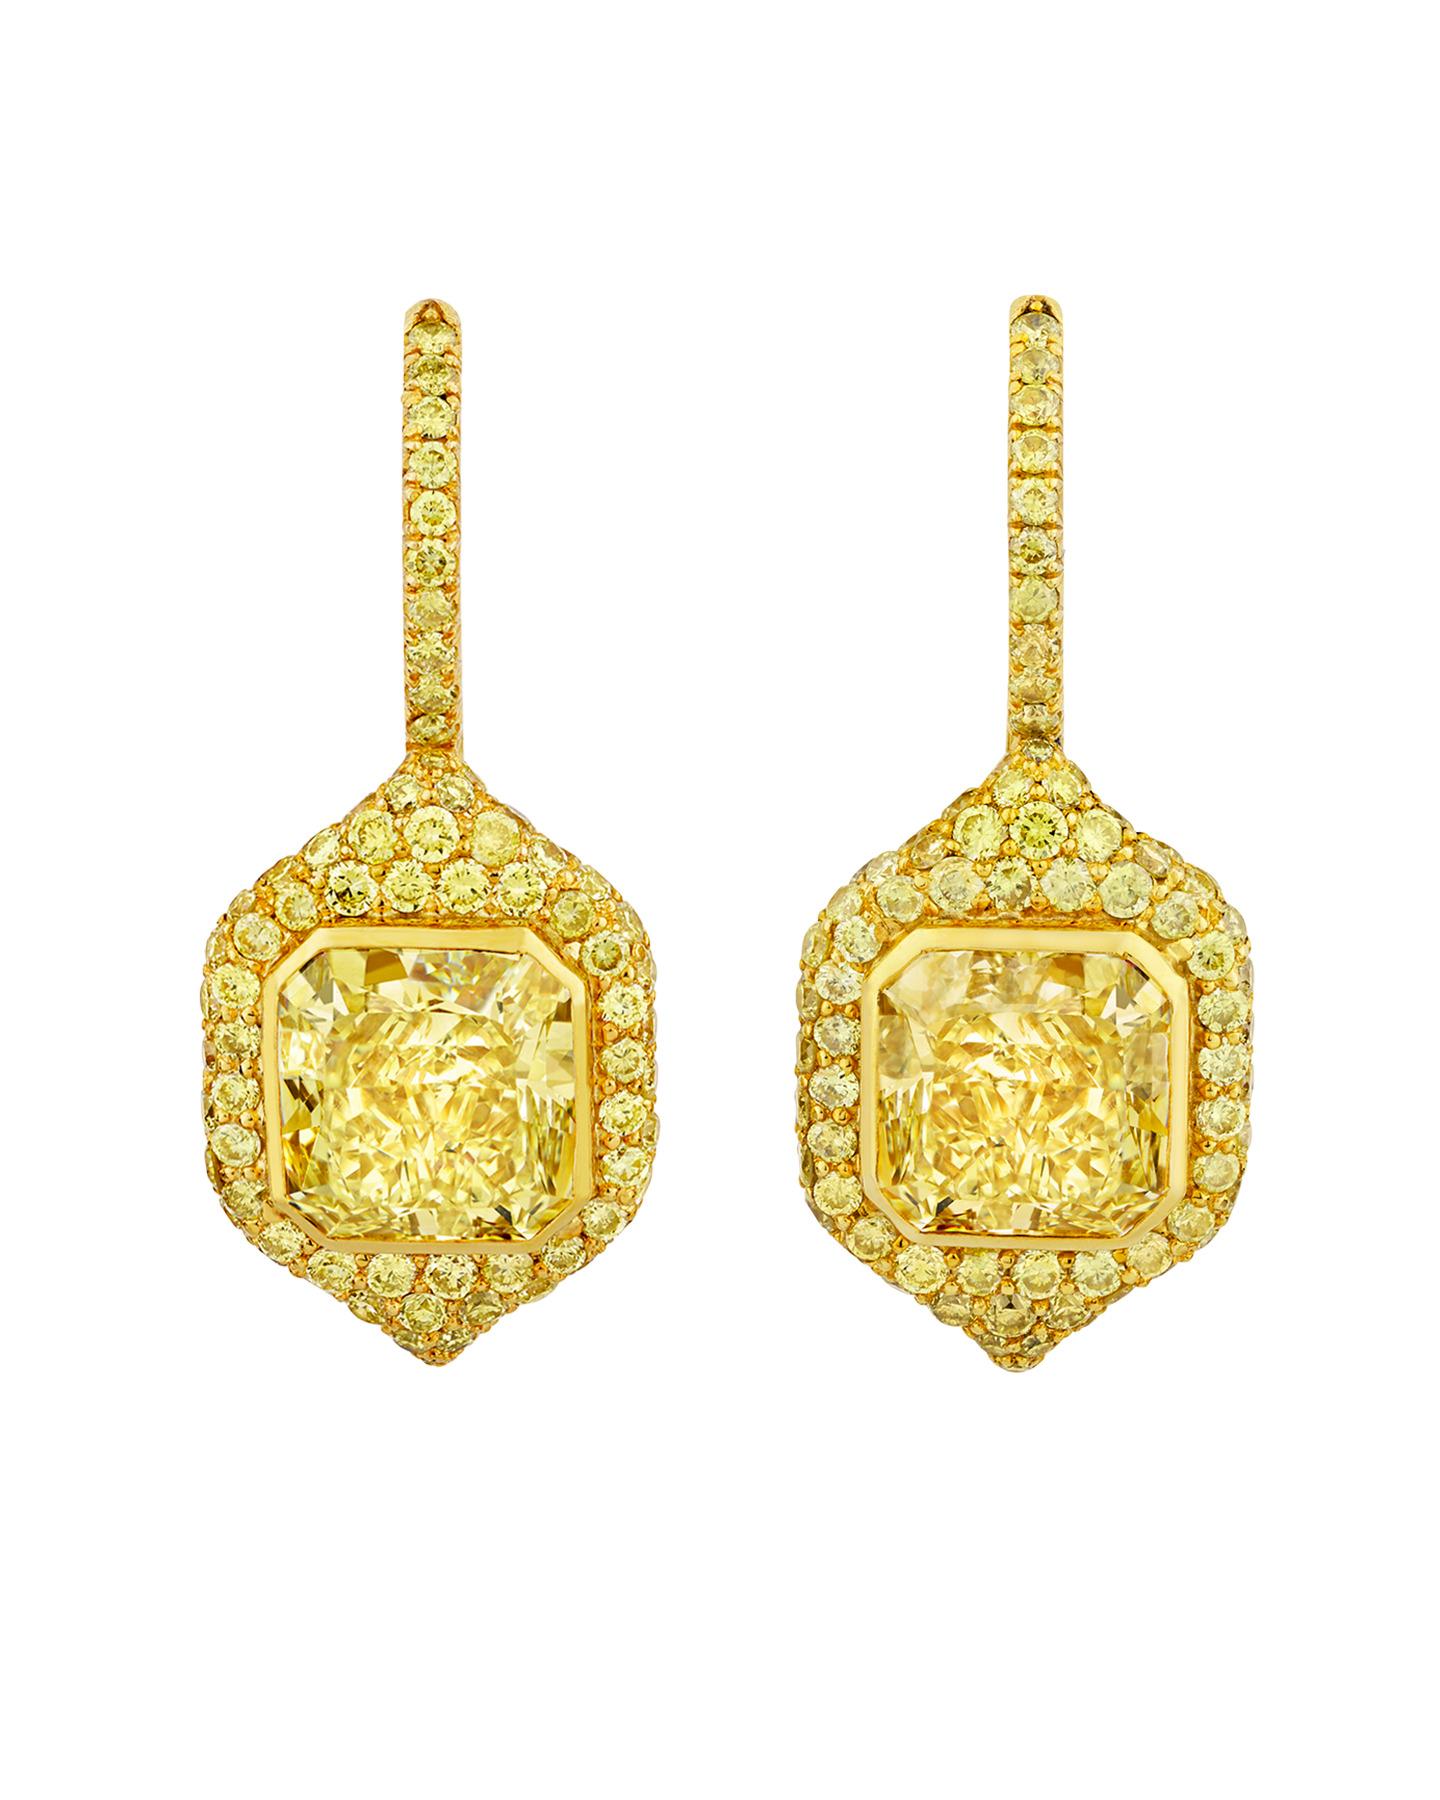 Contemporary Fancy Yellow Diamond Drop Earrings, 4.91 Carat